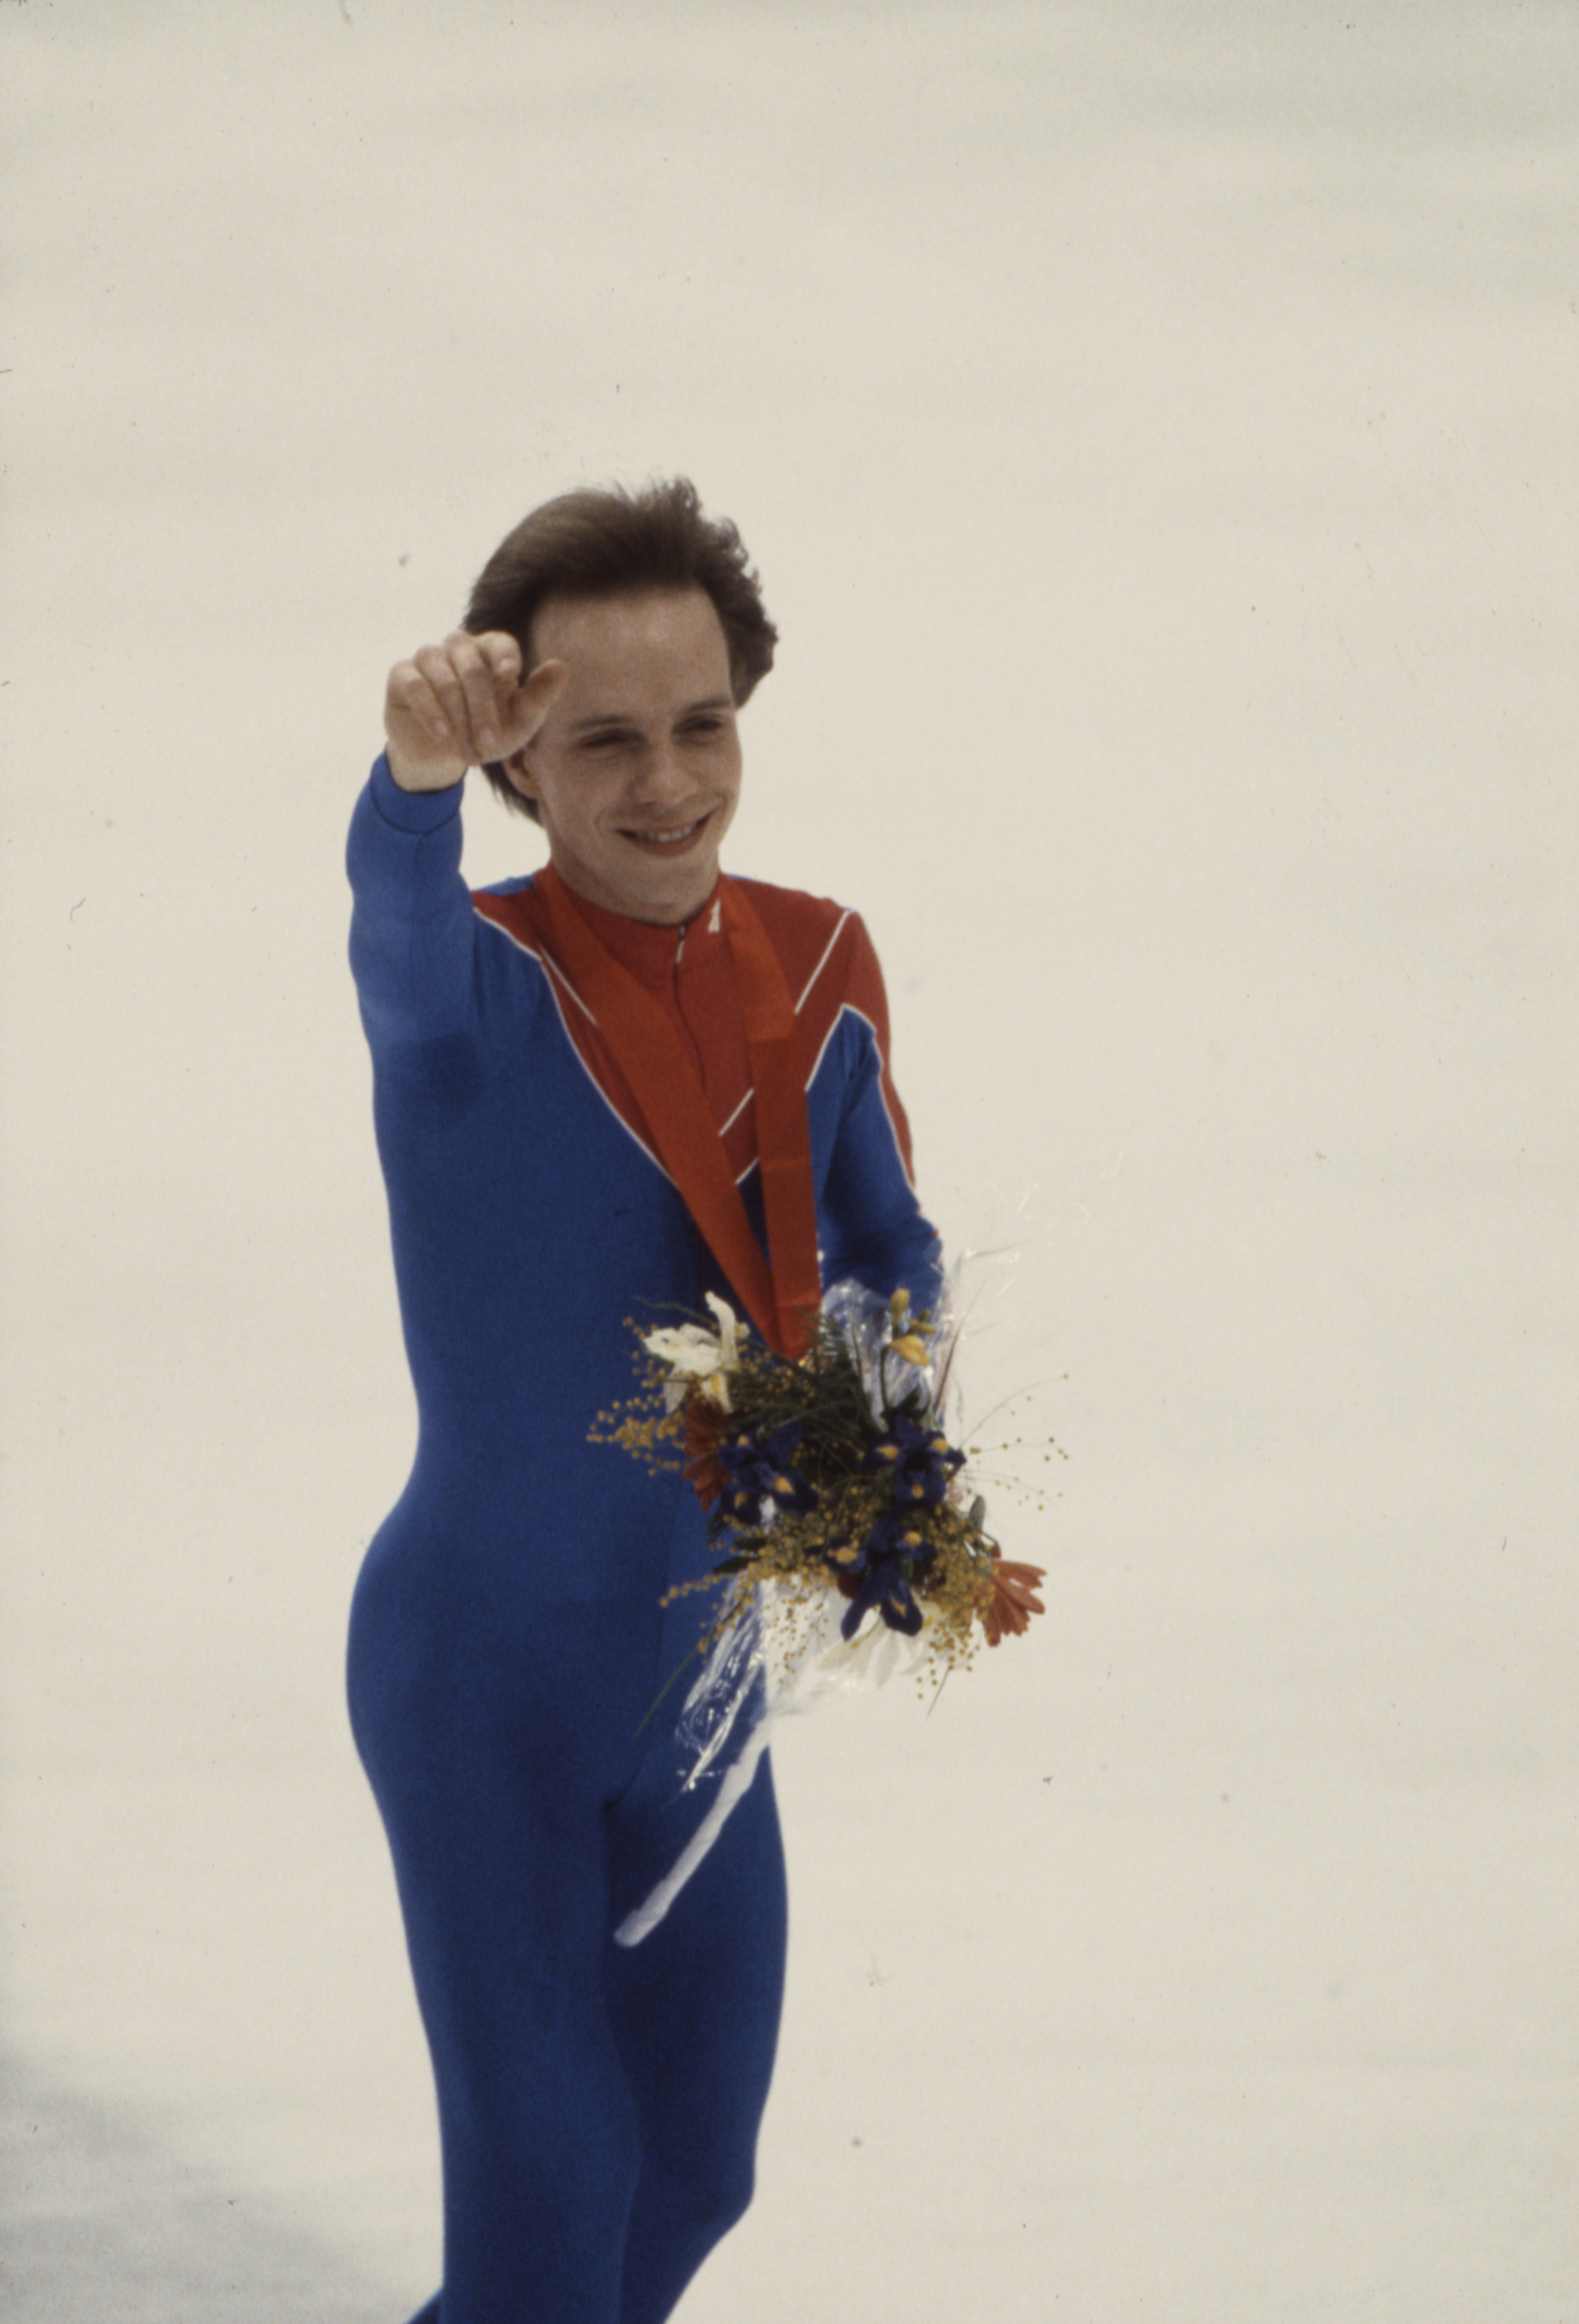 Scott Hamilton lors de la cérémonie de remise des médailles de l'épreuve masculine de patinage artistique aux Jeux olympiques d'hiver de 1984, le 1er février 1984 | Source : Getty Images